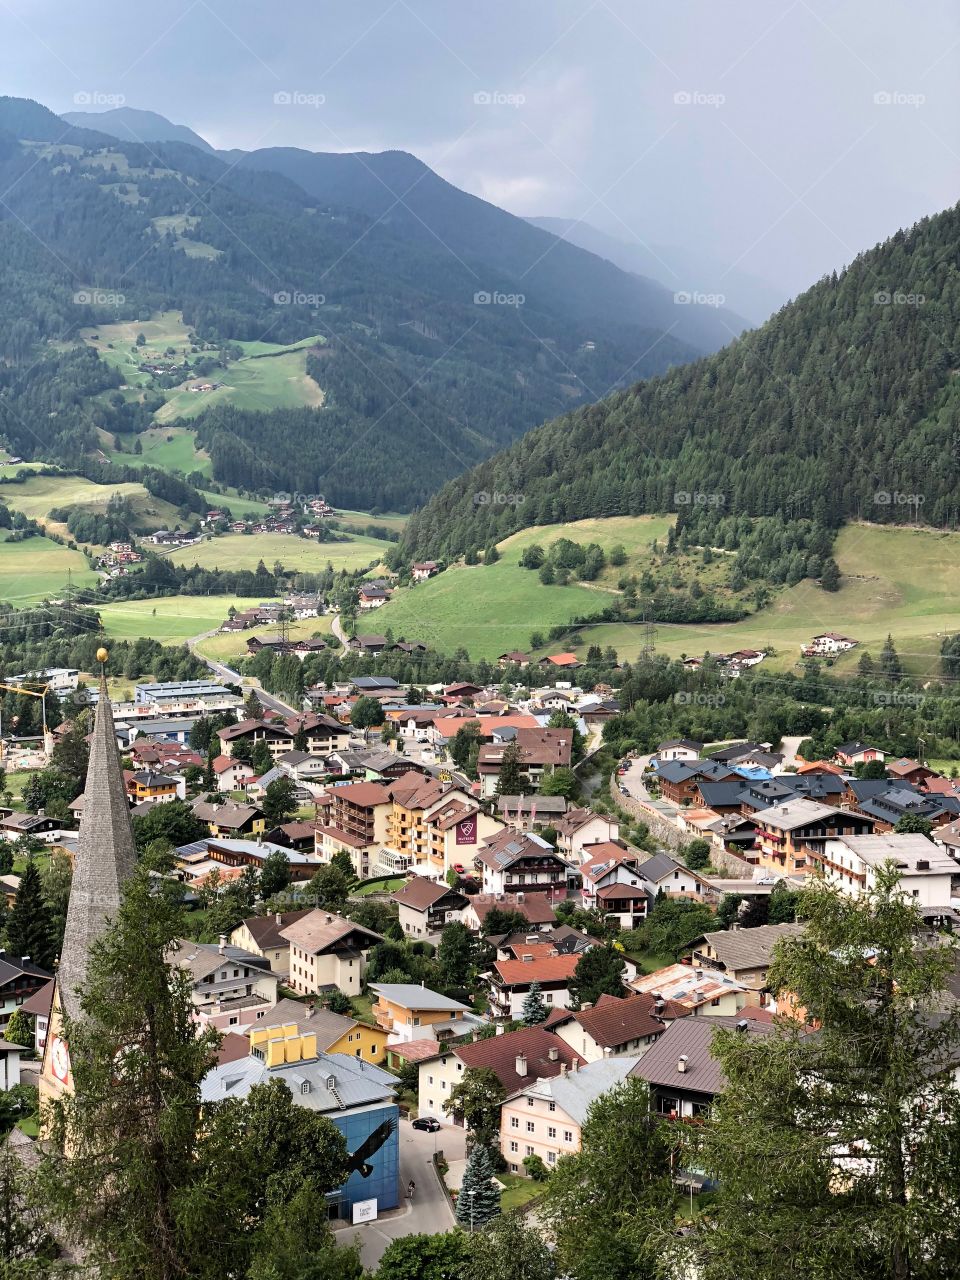 Village of Austria 